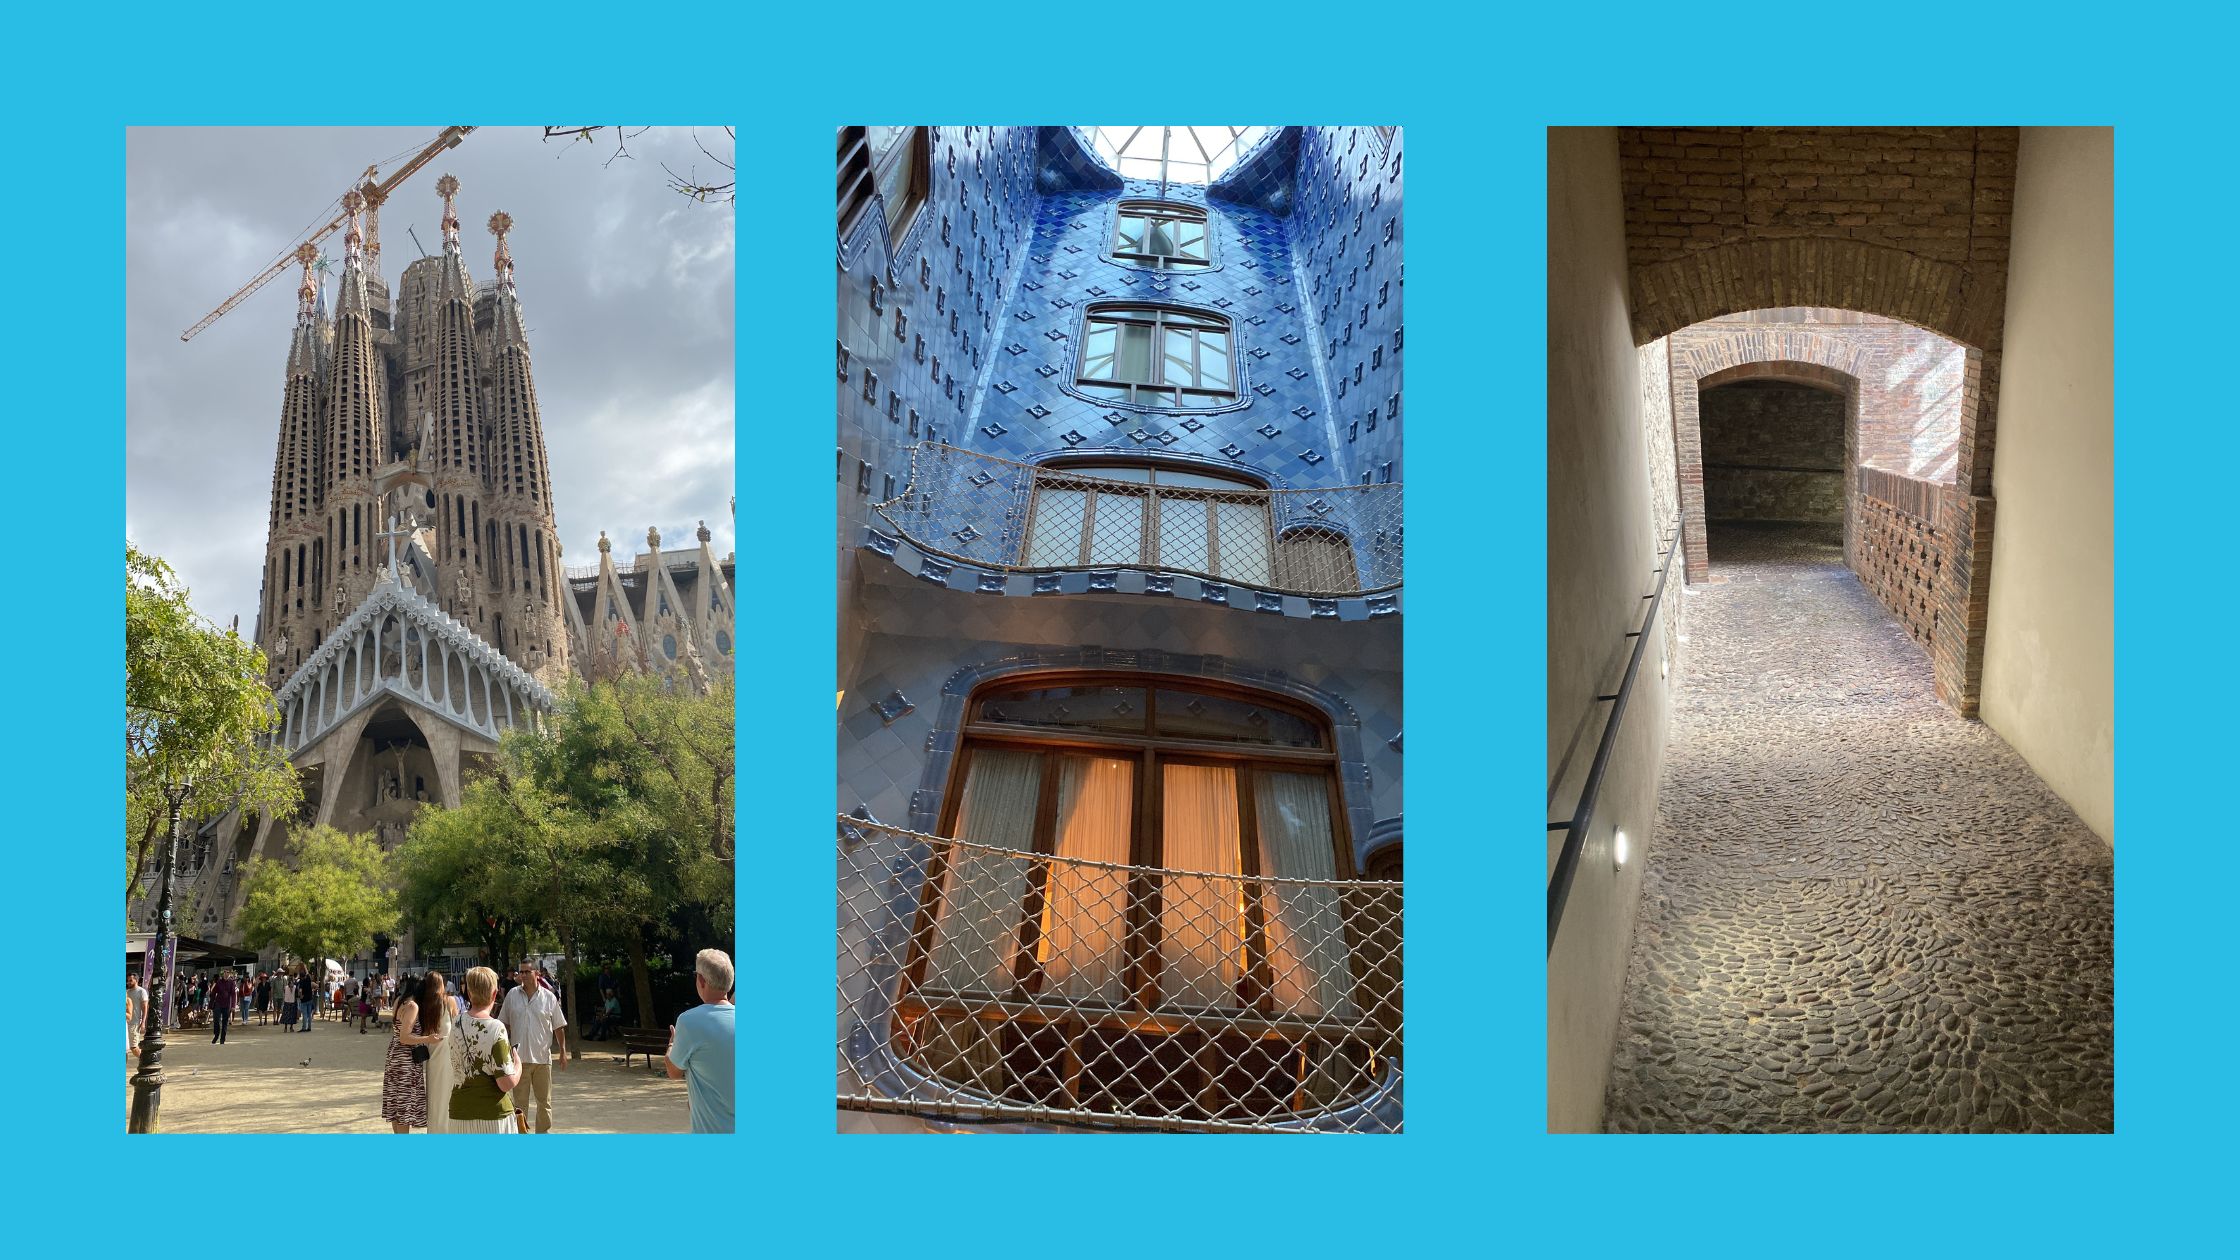 Blauwe achtergrond, drie rechtopstaande foto's naast elkaar. Links een foto van de gevel van de Sagrada Familia vanuit het park genomen met wat mensen op de voorgrond. In het midden een foto van de patio van Casa Batlló waarop een gevel met keramiektegels met een reliefmotief en van boven naar onder in lichter blauw en raampartijen in een organisch gevormd houten kozijn en een balkon. Rechts een foto van een neerwaartse gang met stenen vloer, gedeeltelijk overdekt en aan het einde een donkere ingang.